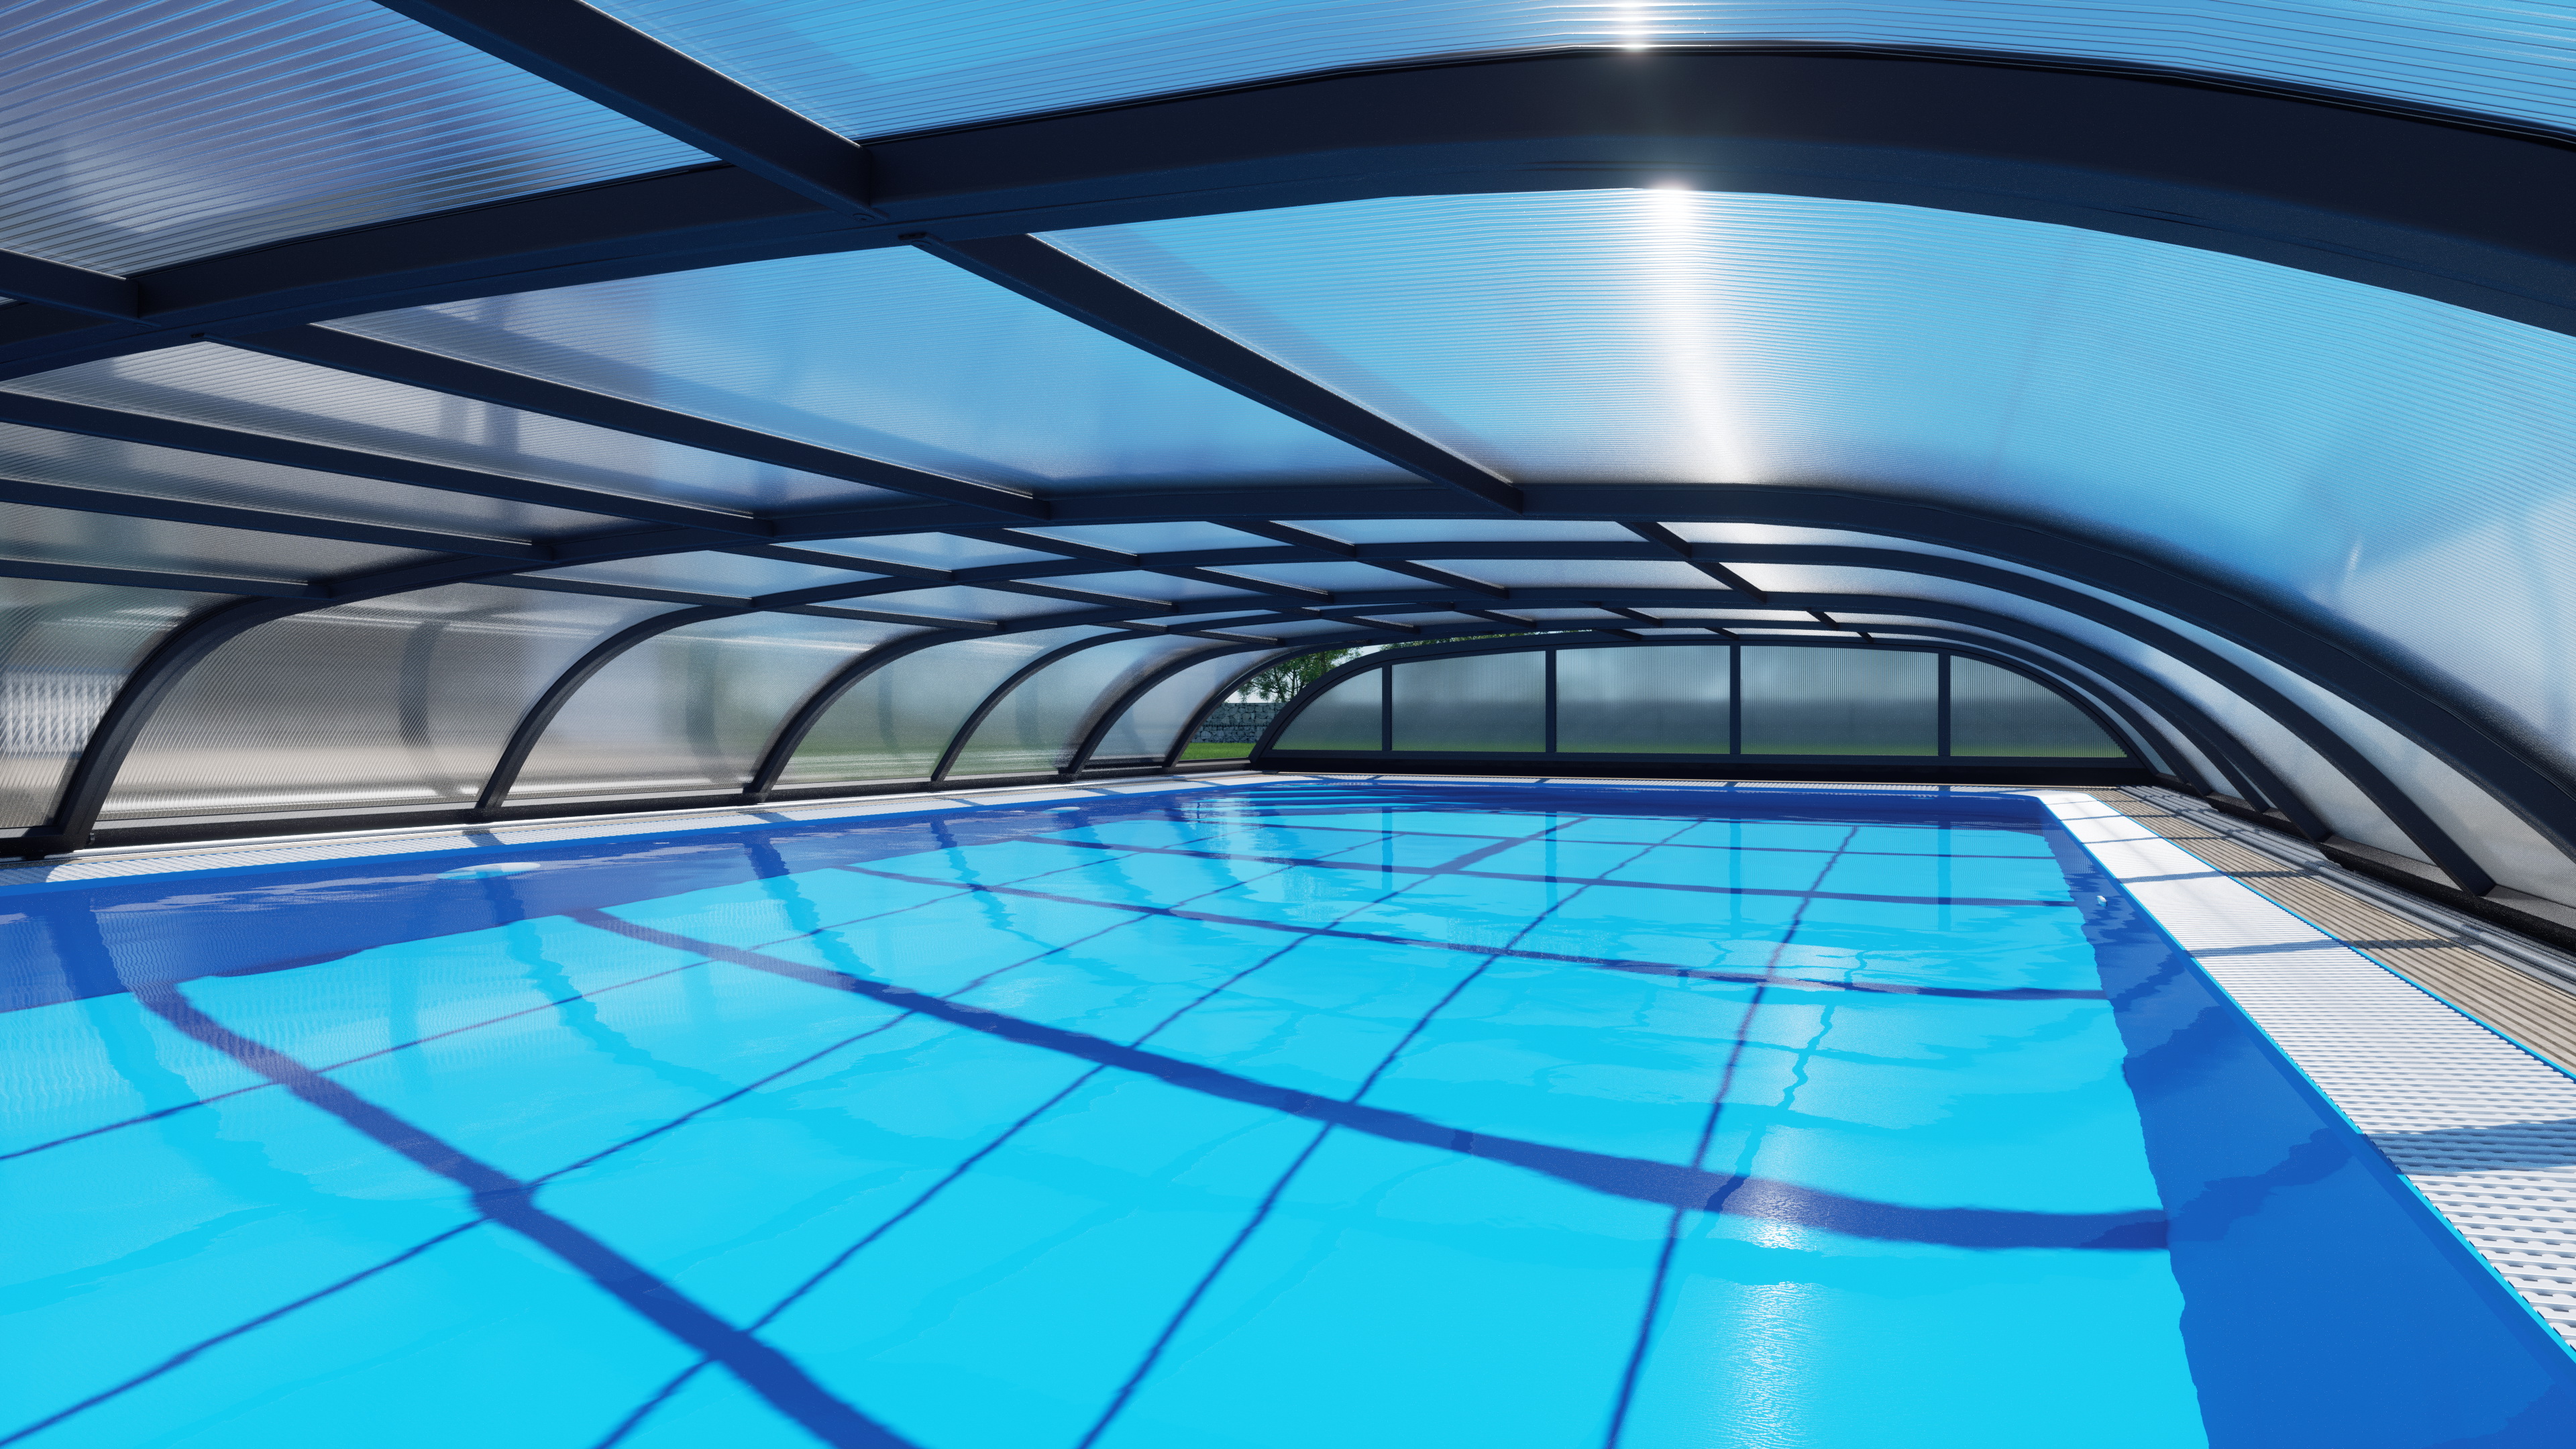 FiWa Pooldach - Verkauf von Schwimmbadüberdachungen, Pools und Zubehör